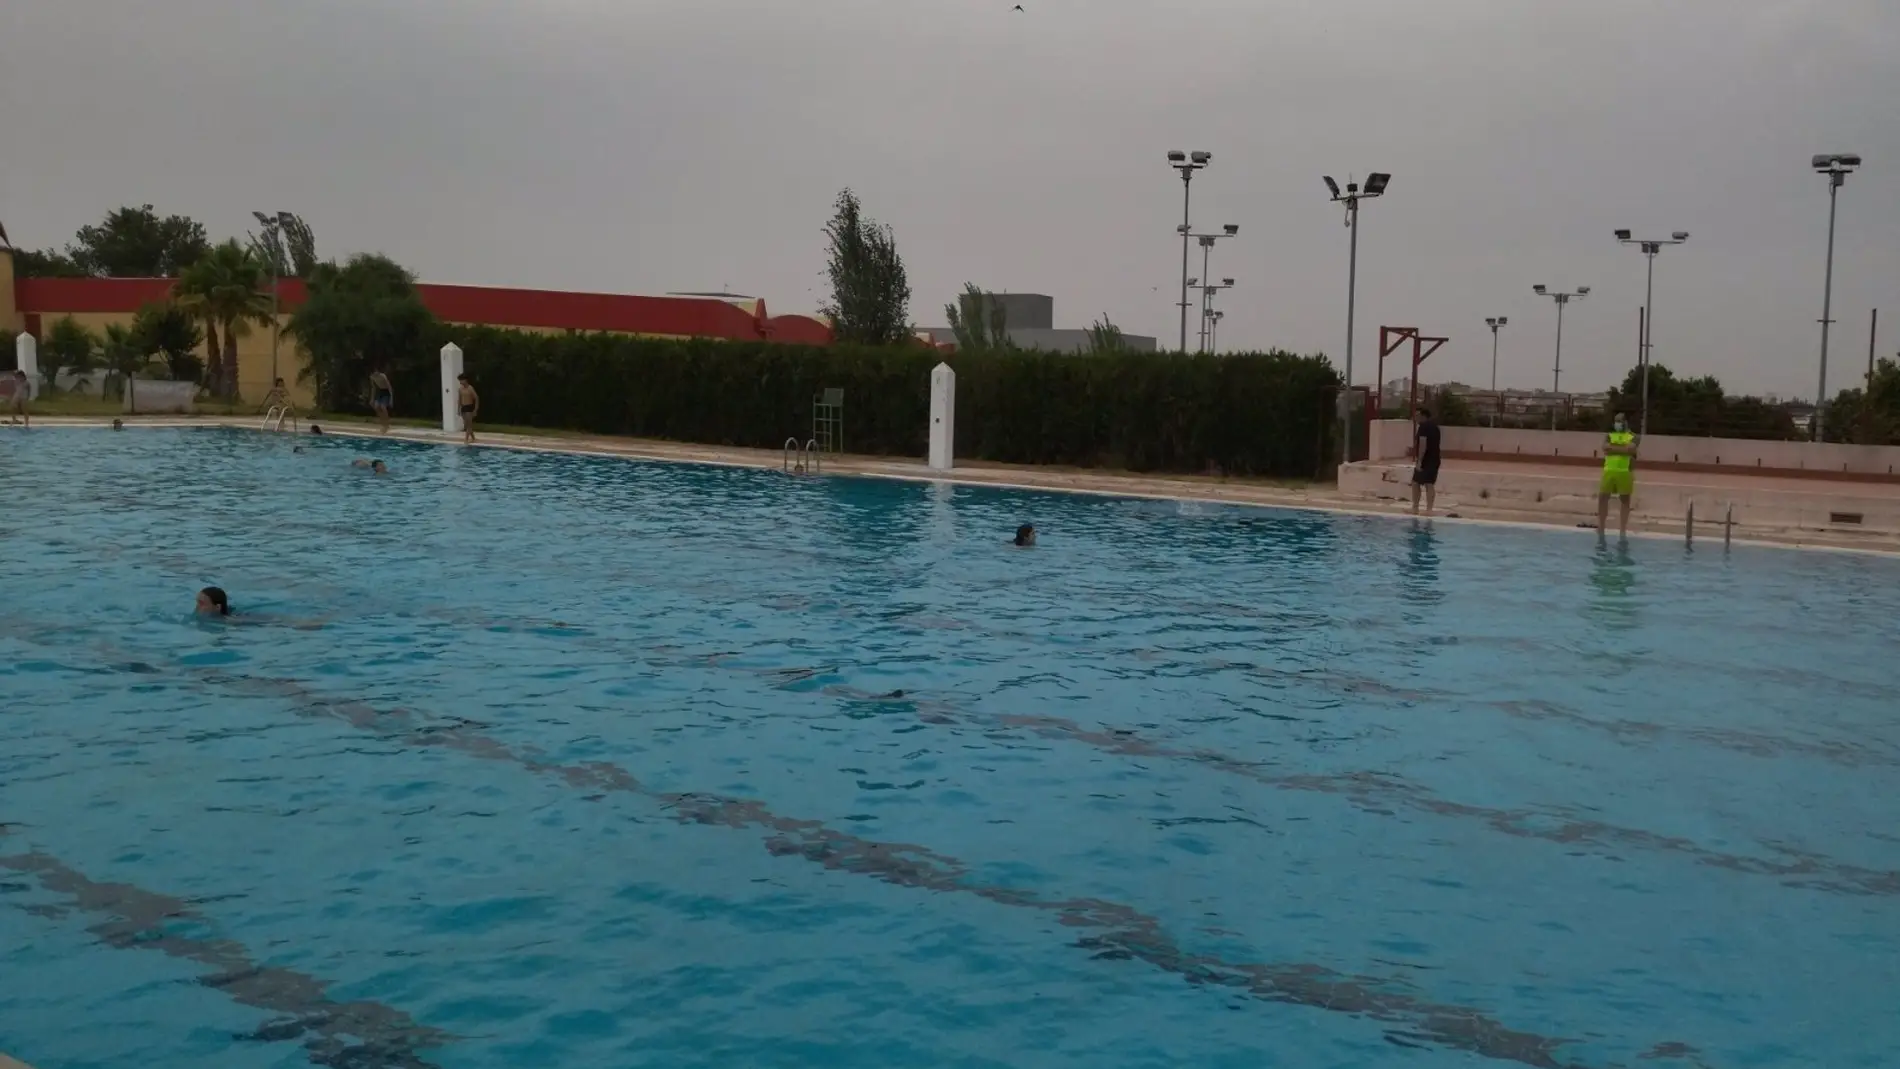 Las piscinas municipales Diocles, Abadías y Nueva Ciudad de Mérida recibirán bañistas a partir de este sábado